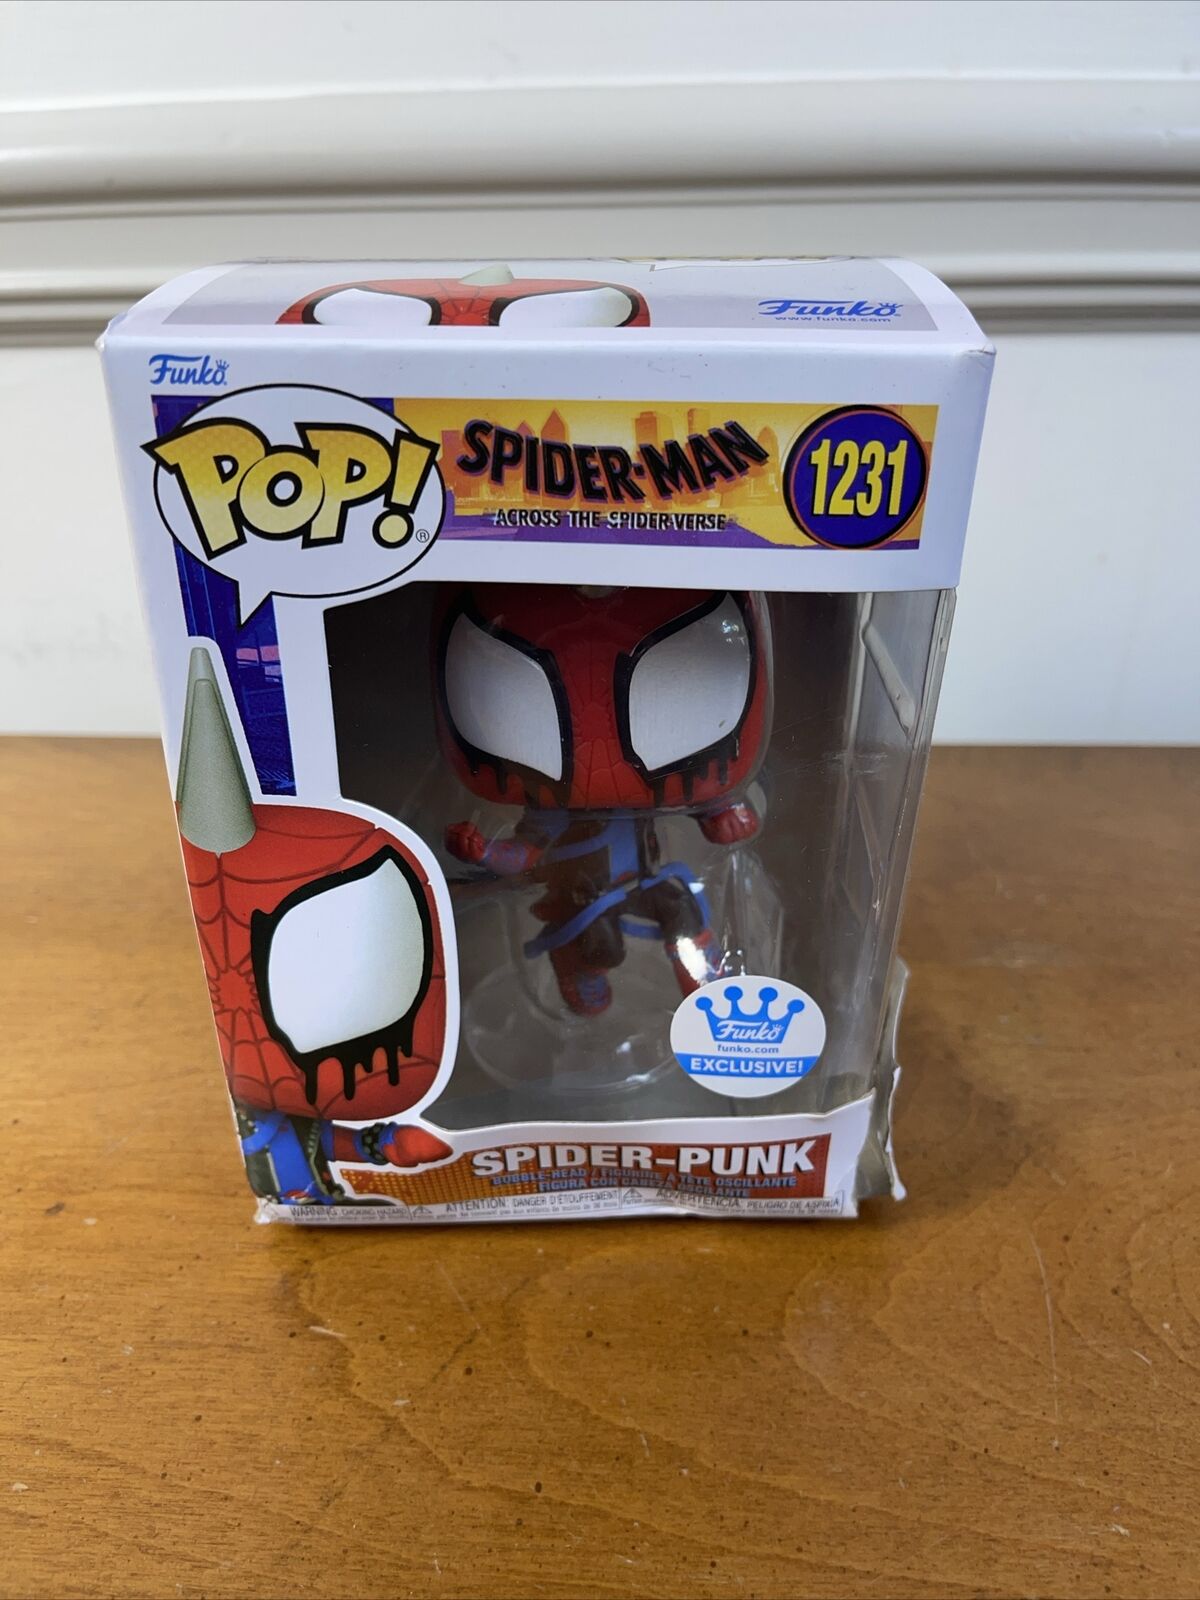 Funko Pop Spider-Man Spider-punk Funko Shop (Exclusive 1231)